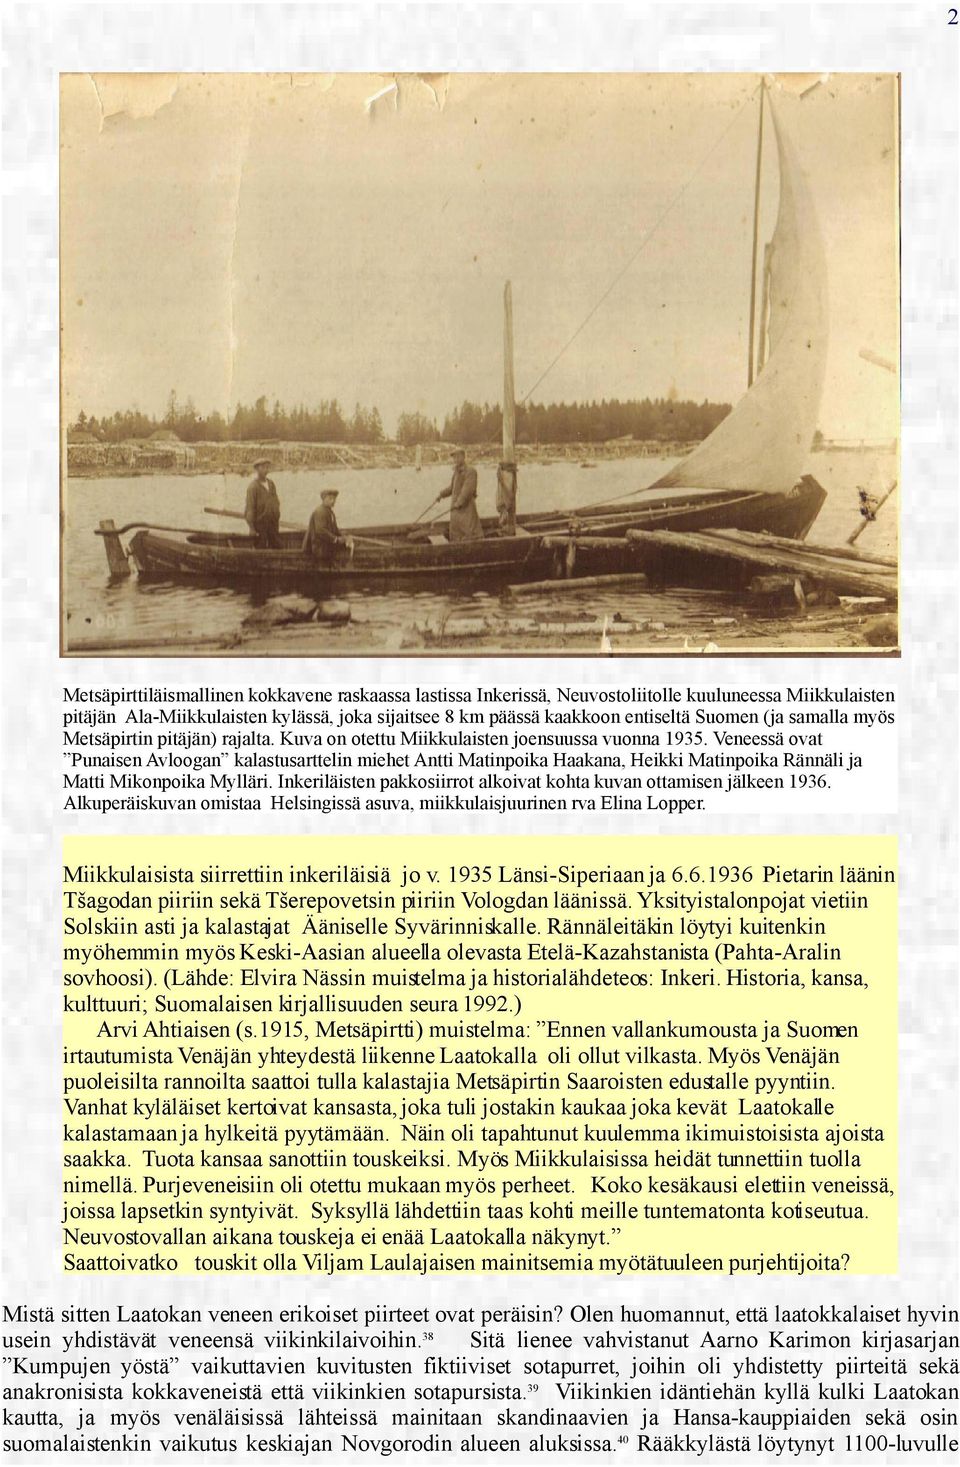 Veneessä ovat Punaisen Avloogan kalastusarttelin miehet Antti Matinpoika Haakana, Heikki Matinpoika Rännäli ja Matti Mikonpoika Mylläri.